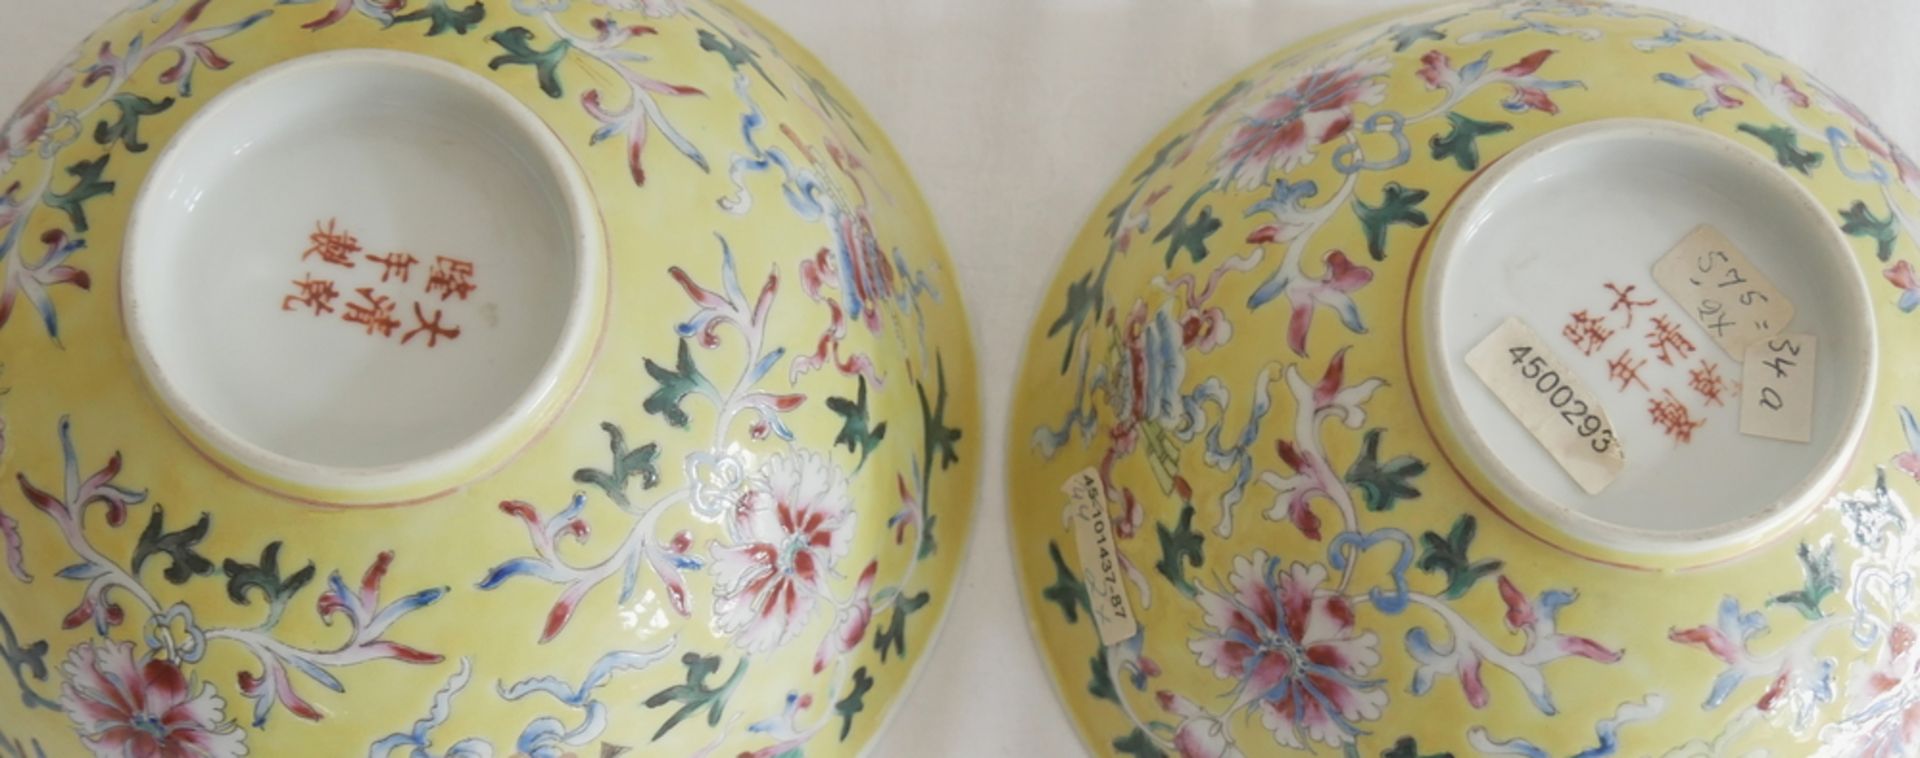 Aus Sammelauflösung! Altes chinesisches Porzellan des 19. Jahrhunderts. 2 Schalen, um 1880 - 90. - Image 3 of 3